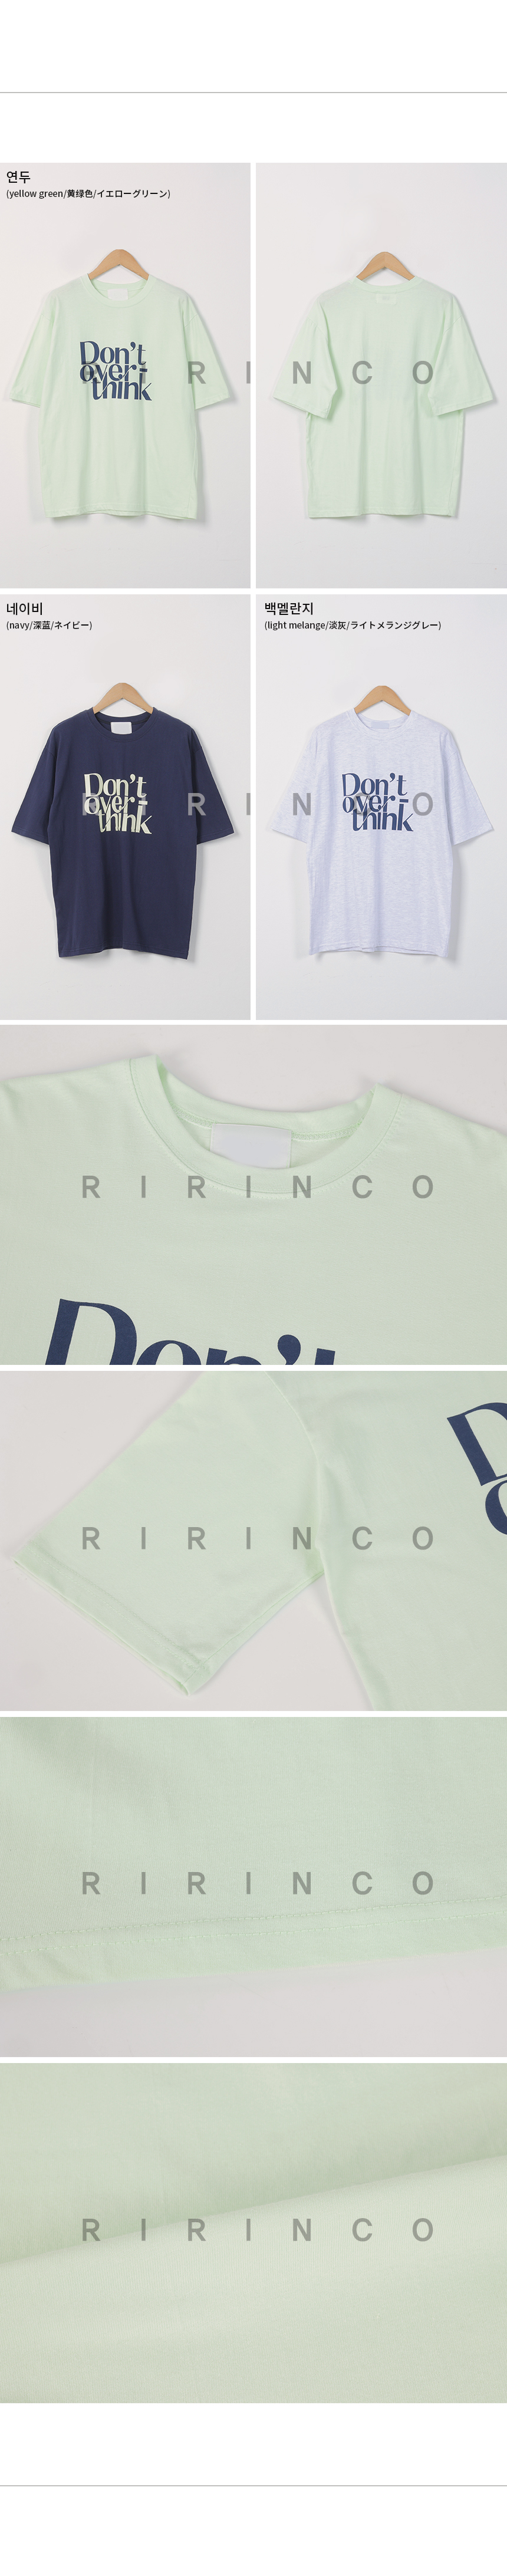 RIRINCO プリントラウンドネック半袖Tシャツ